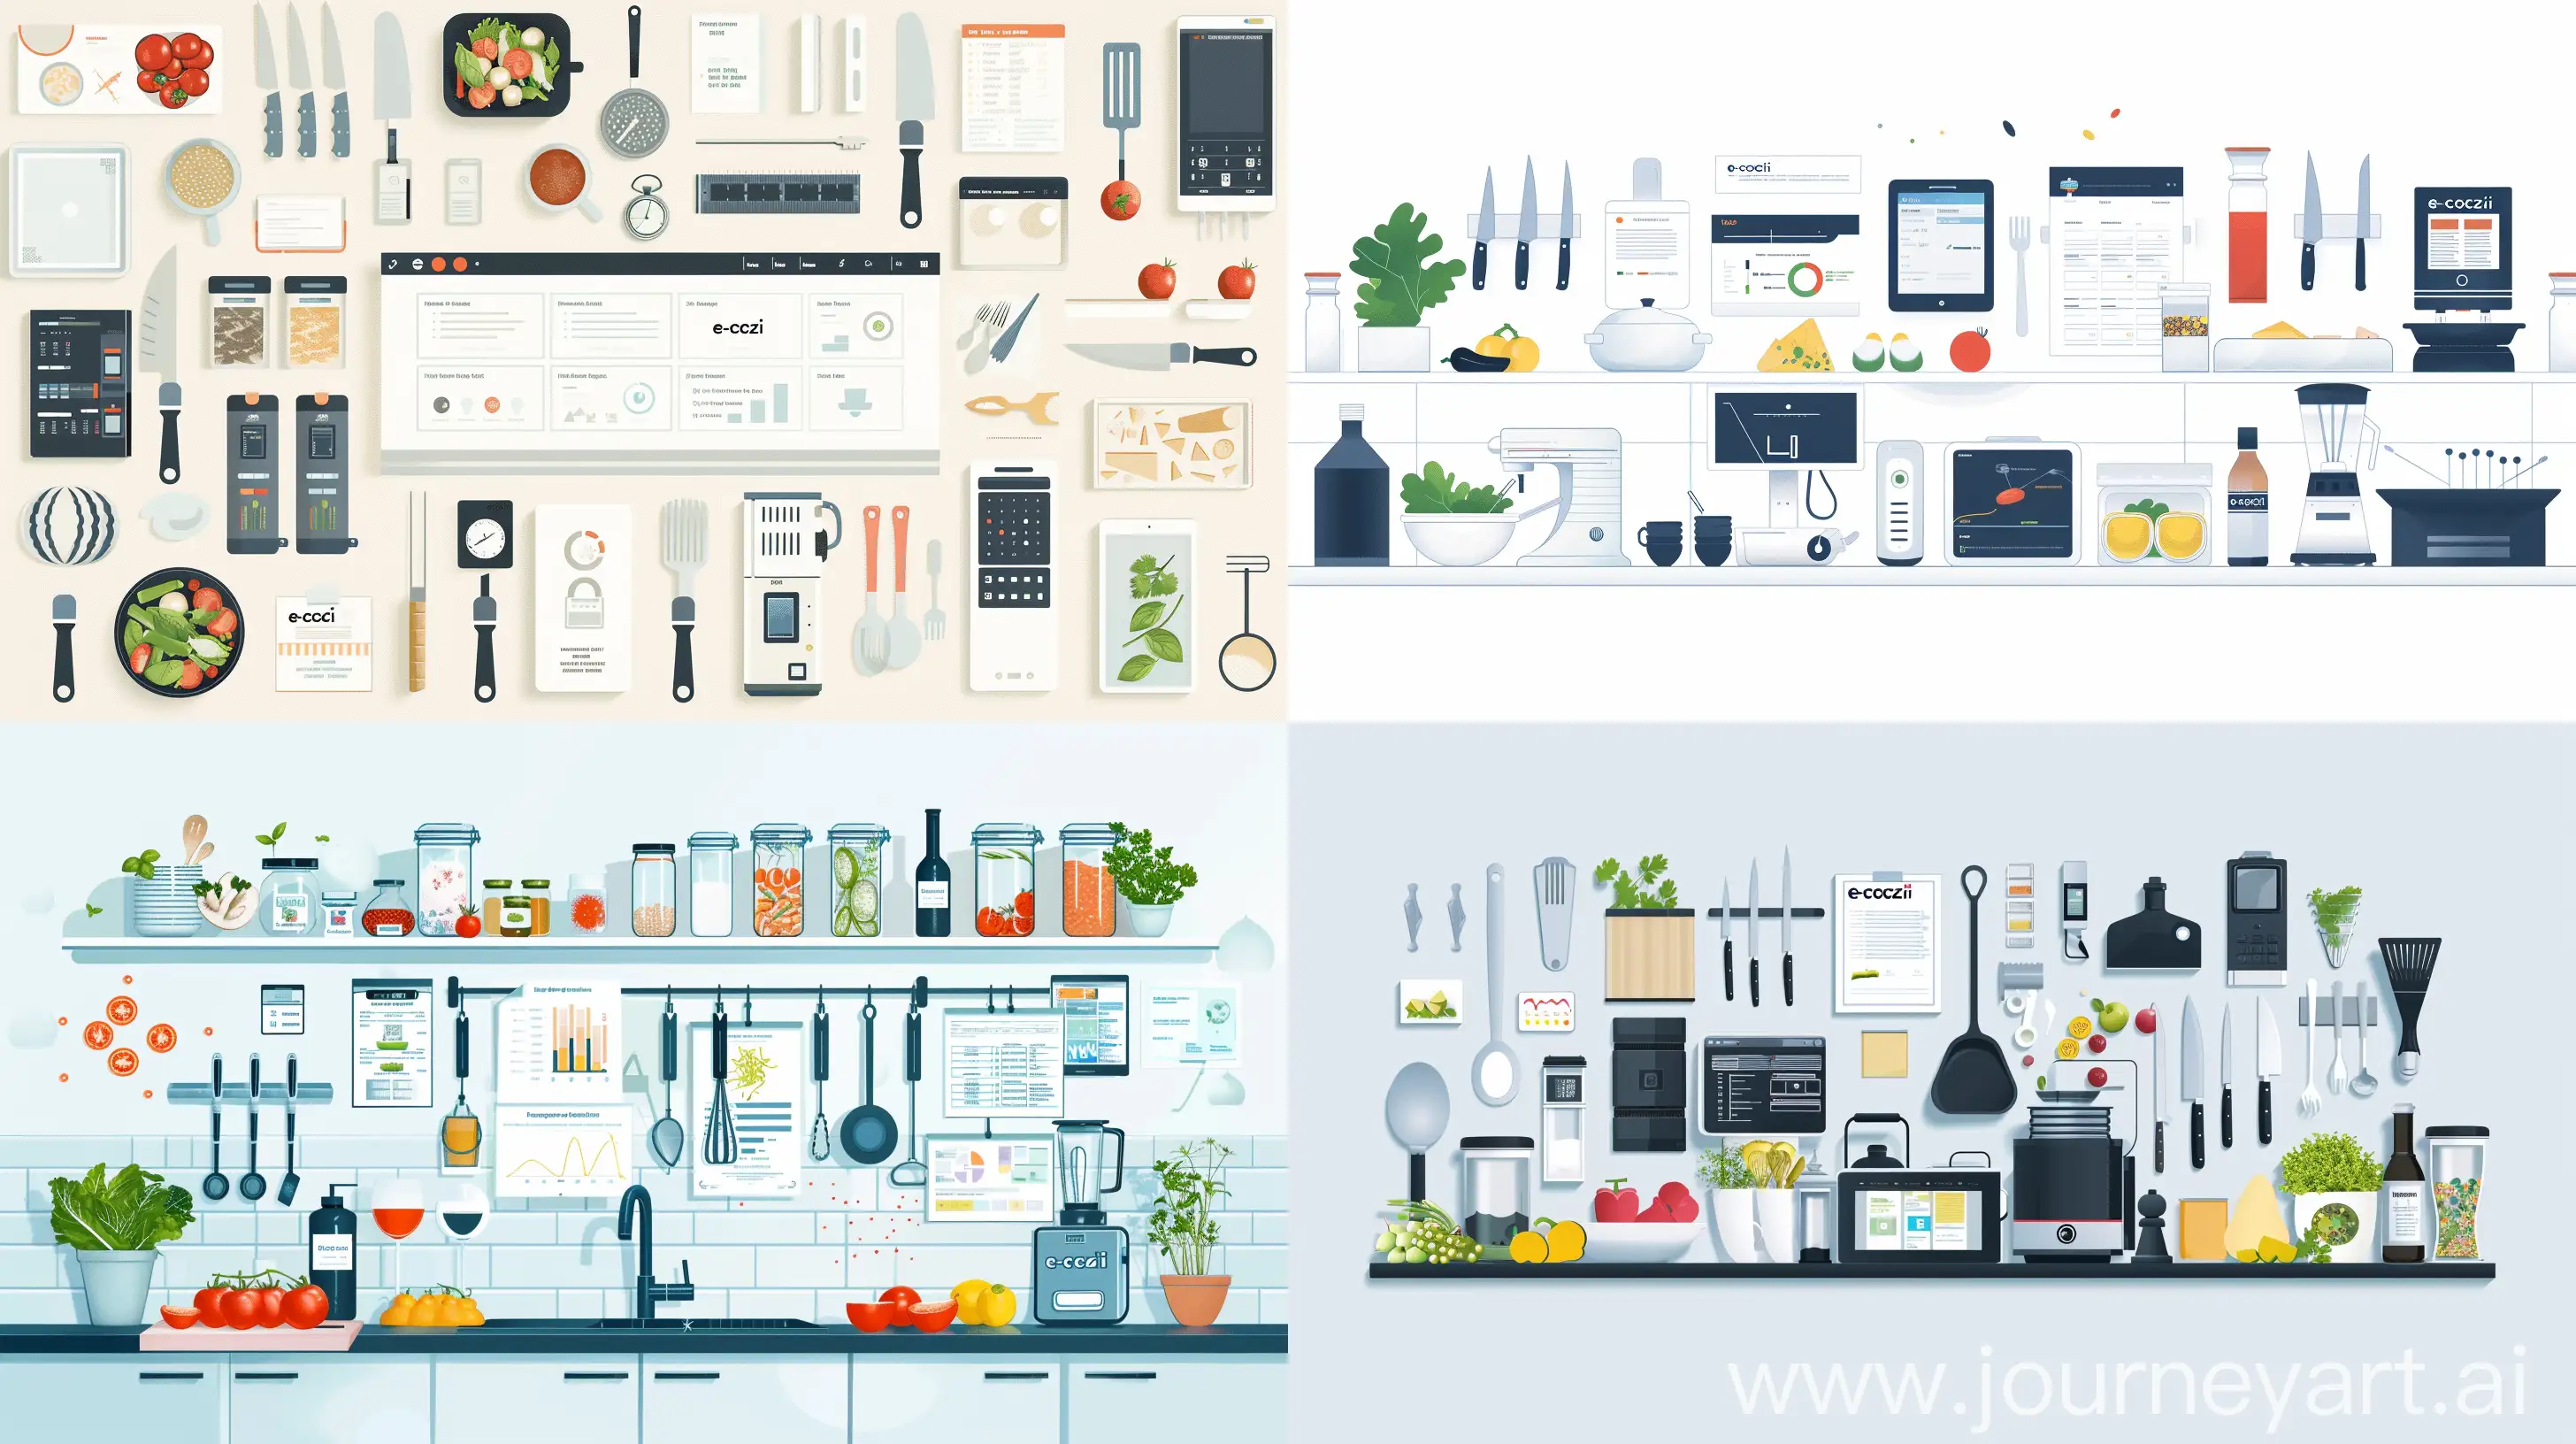 Efficient-Industrial-Kitchen-Management-with-eCozi-SAAS-Platform